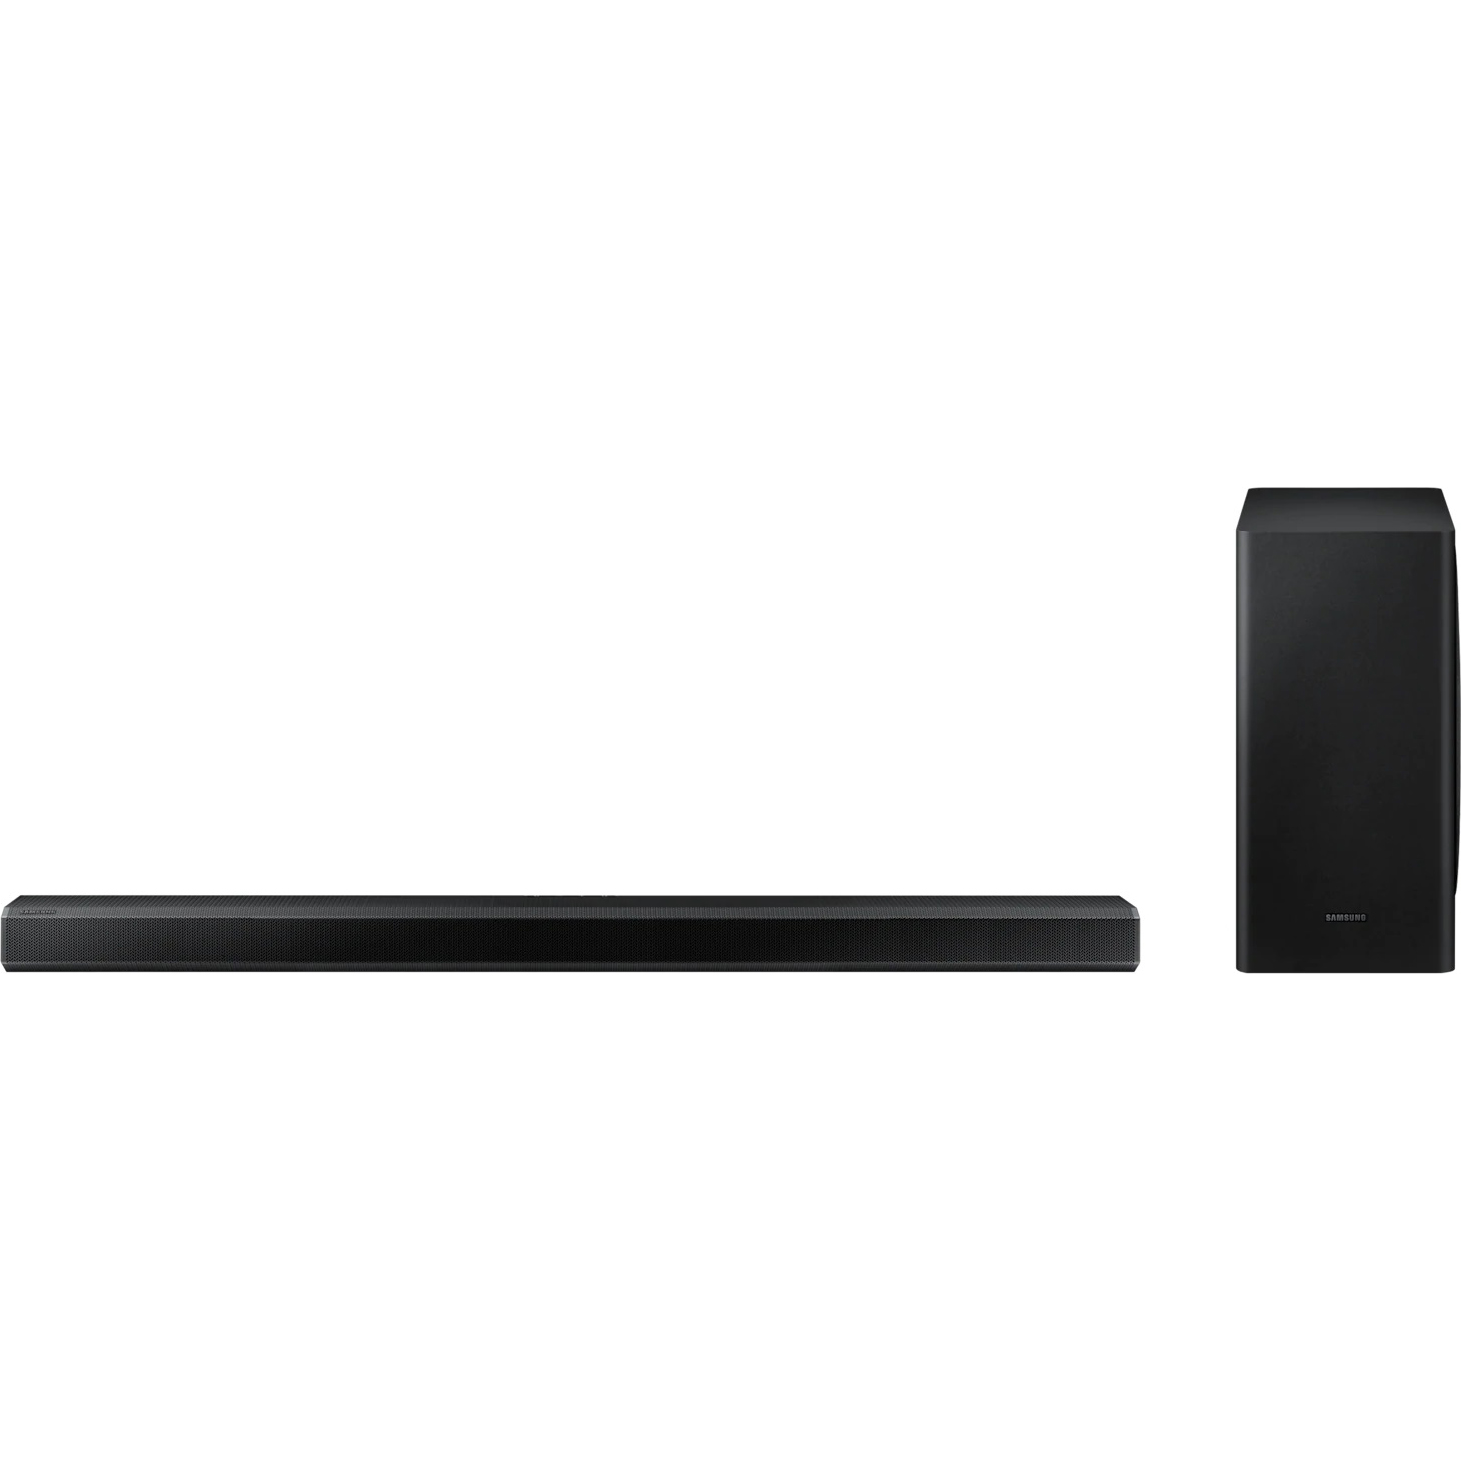 Саундбар Samsung HW-Q800T, цвет черный, размер 40,3*20,5*40,3 см - фото 2